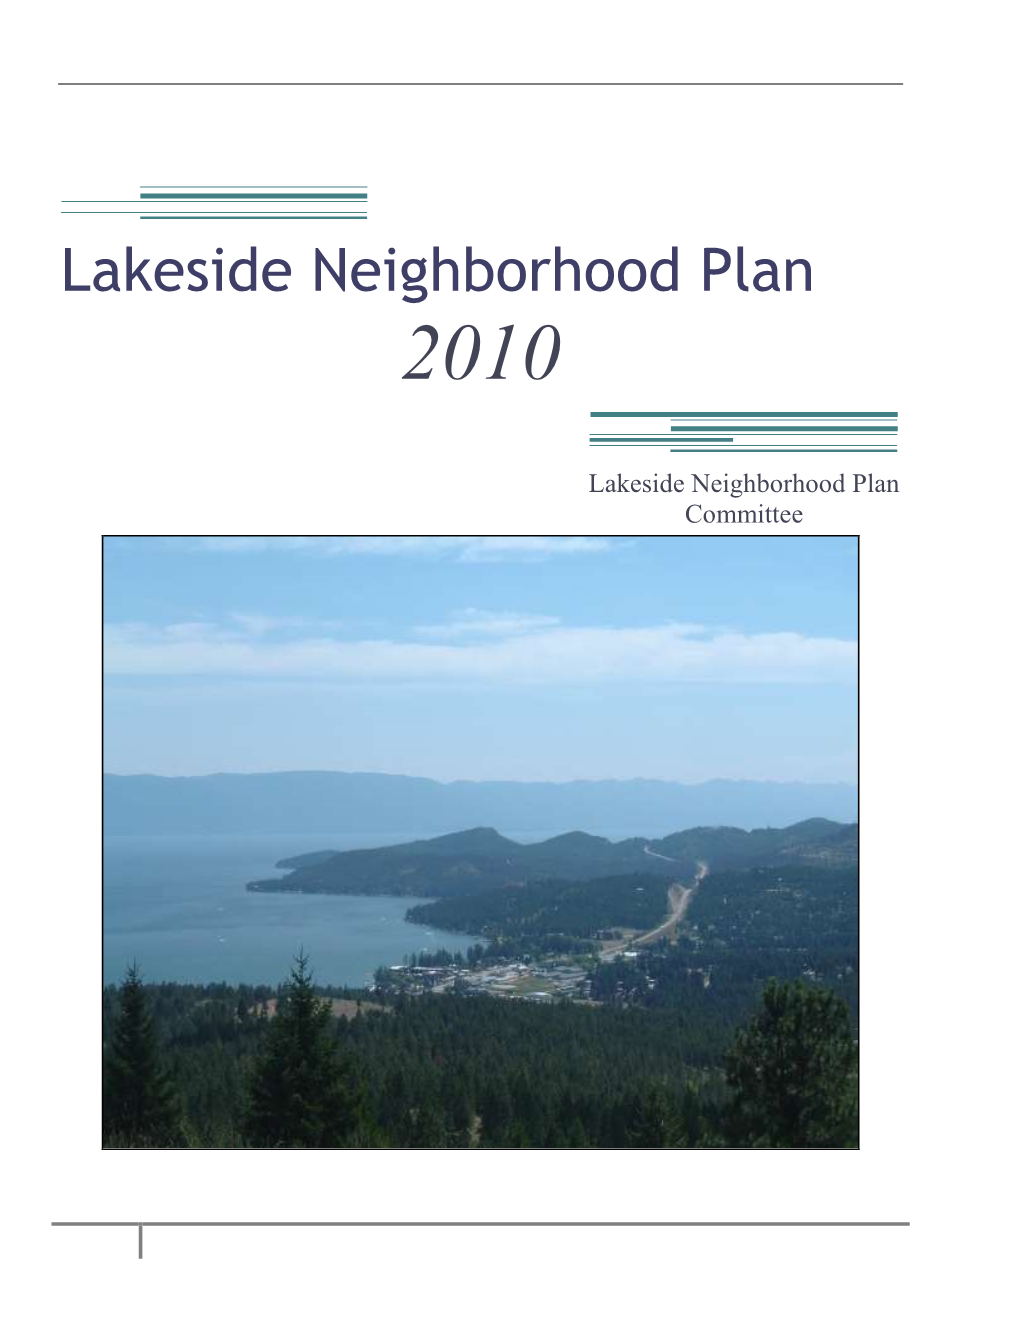 Lakeside Neighborhood Plan Committee